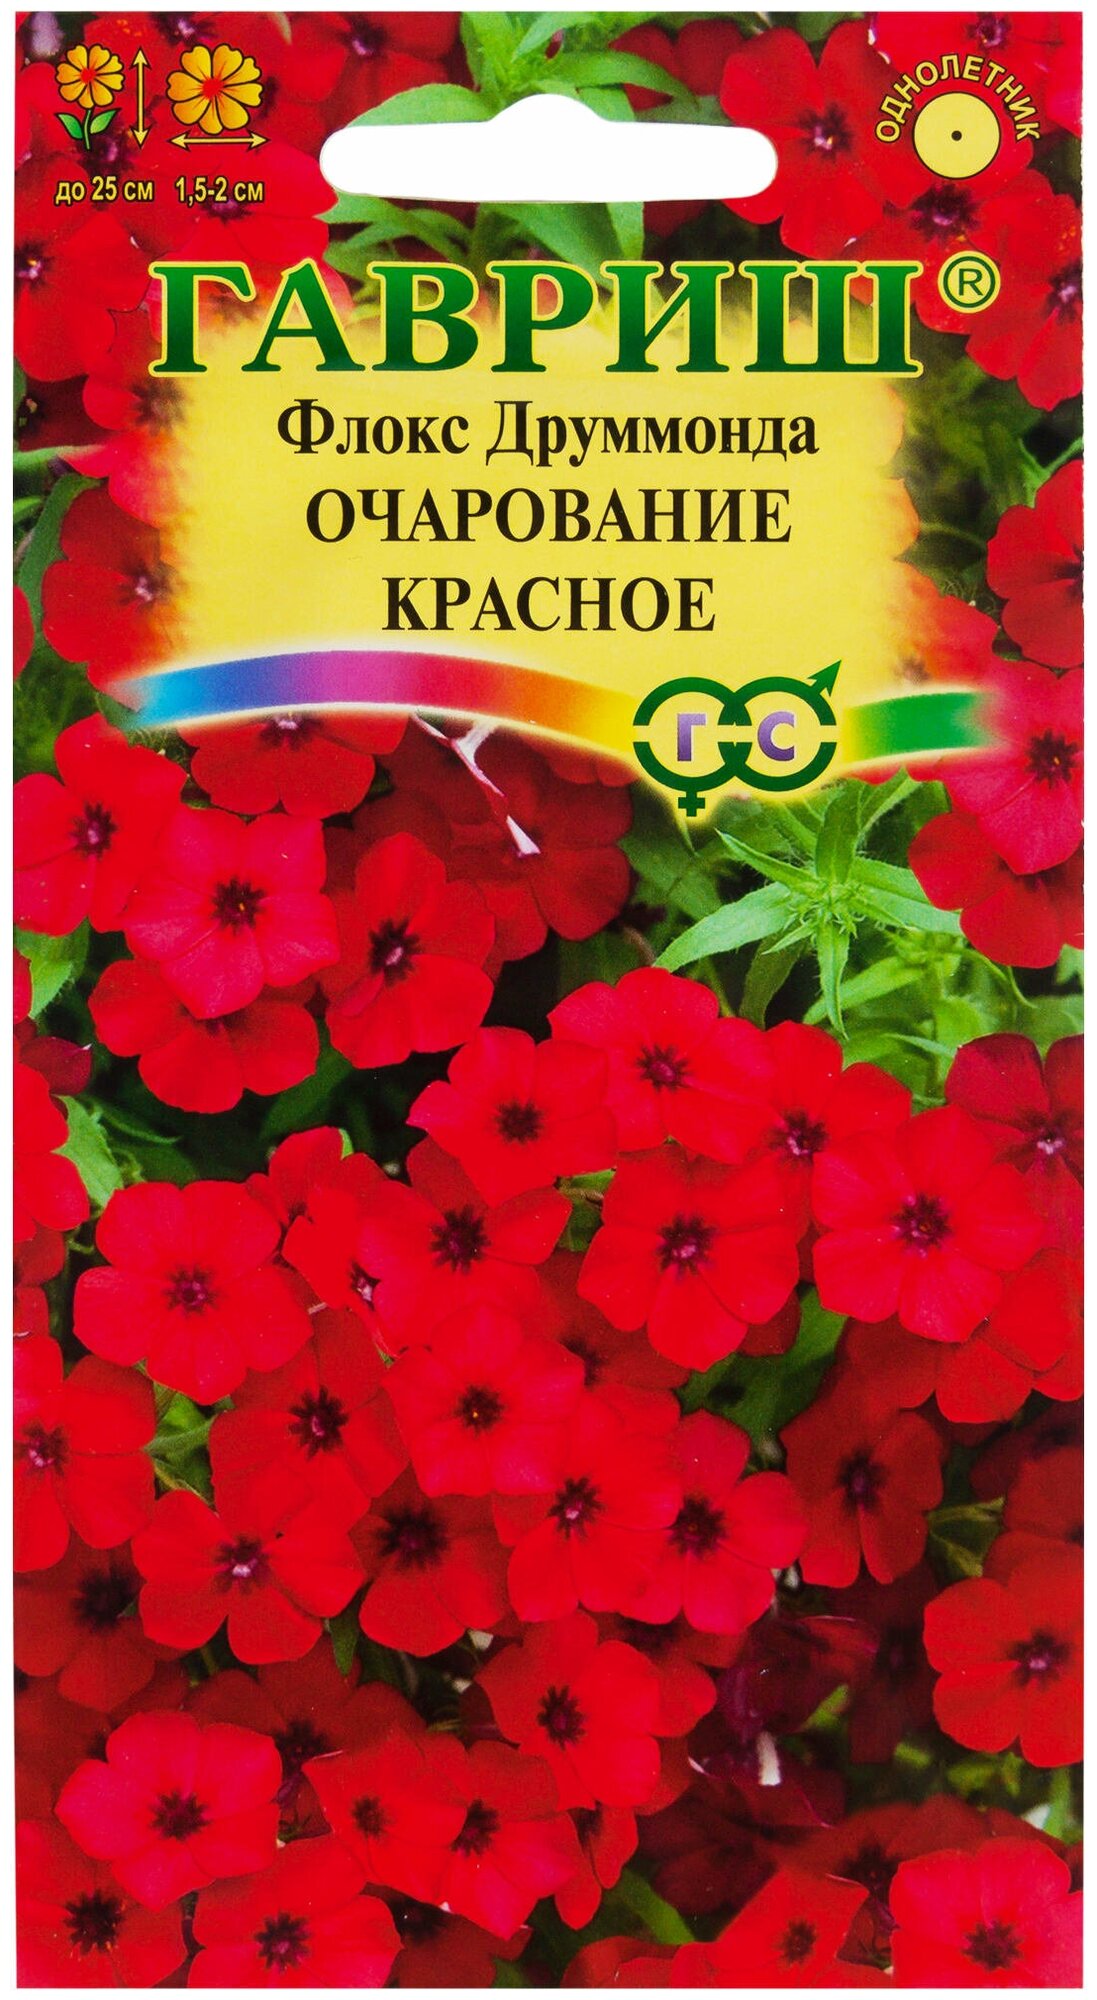 Семена цветов Флокс друммонда Гавриш Очарование красное 0,05 г